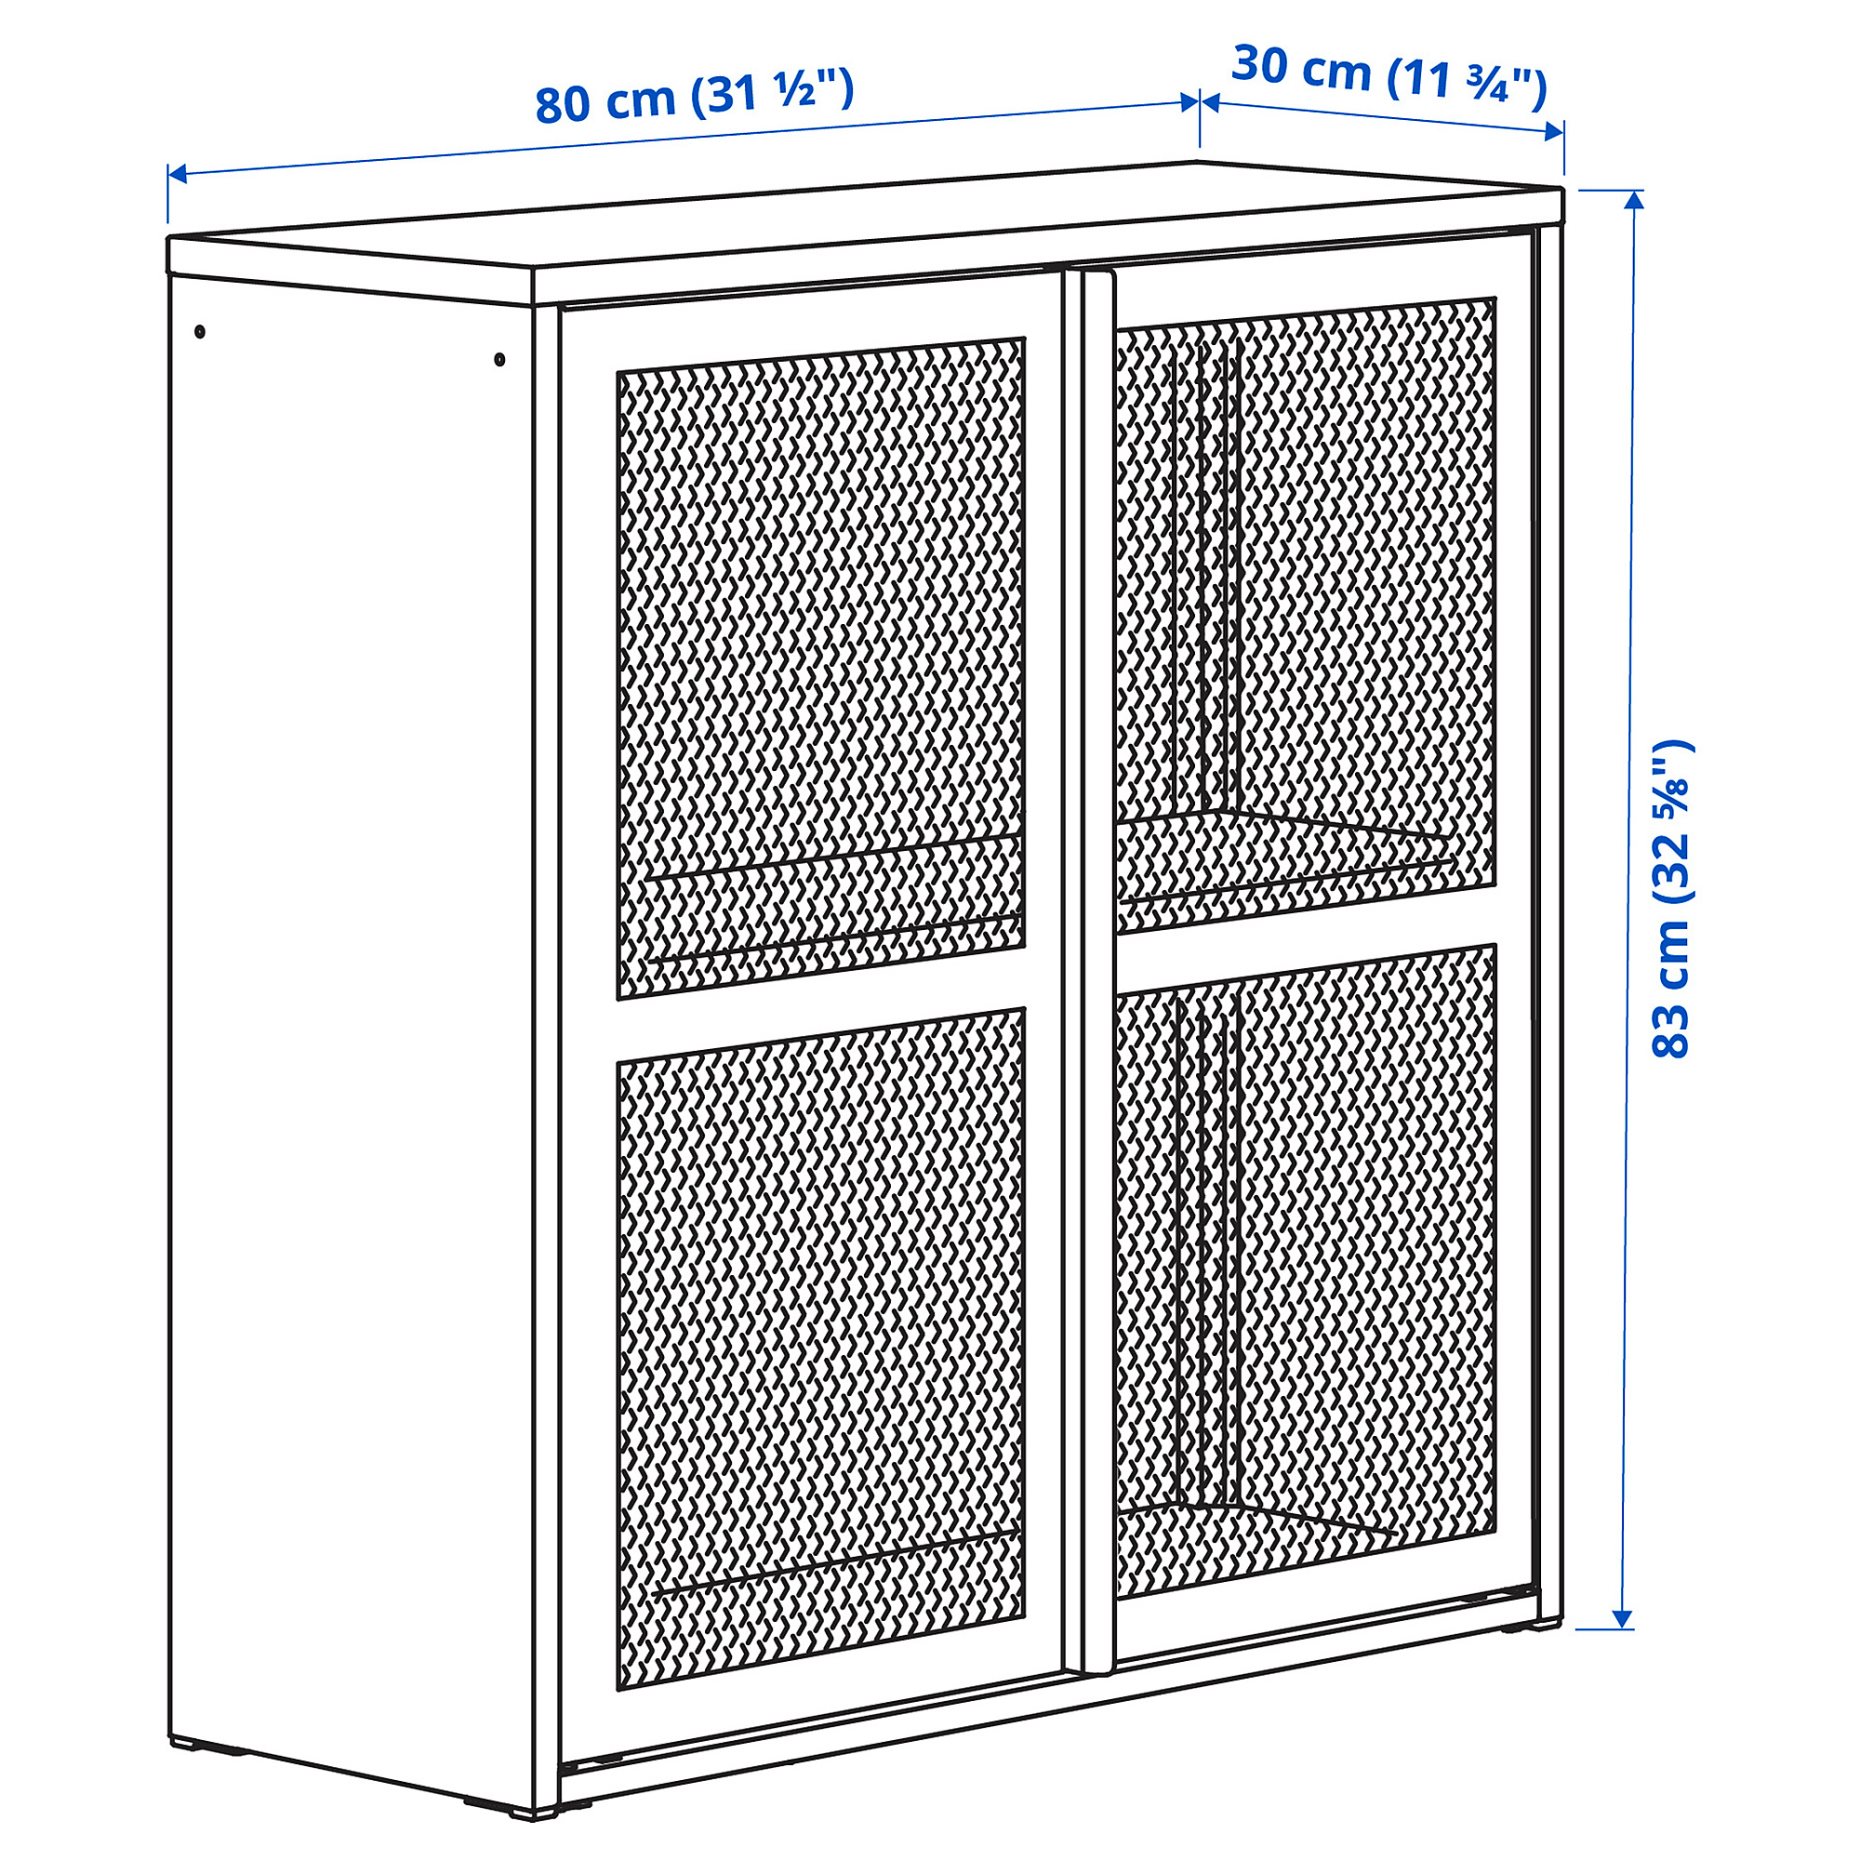 IVAR, cabinet with doors/mesh, 80x83 cm, 005.312.40